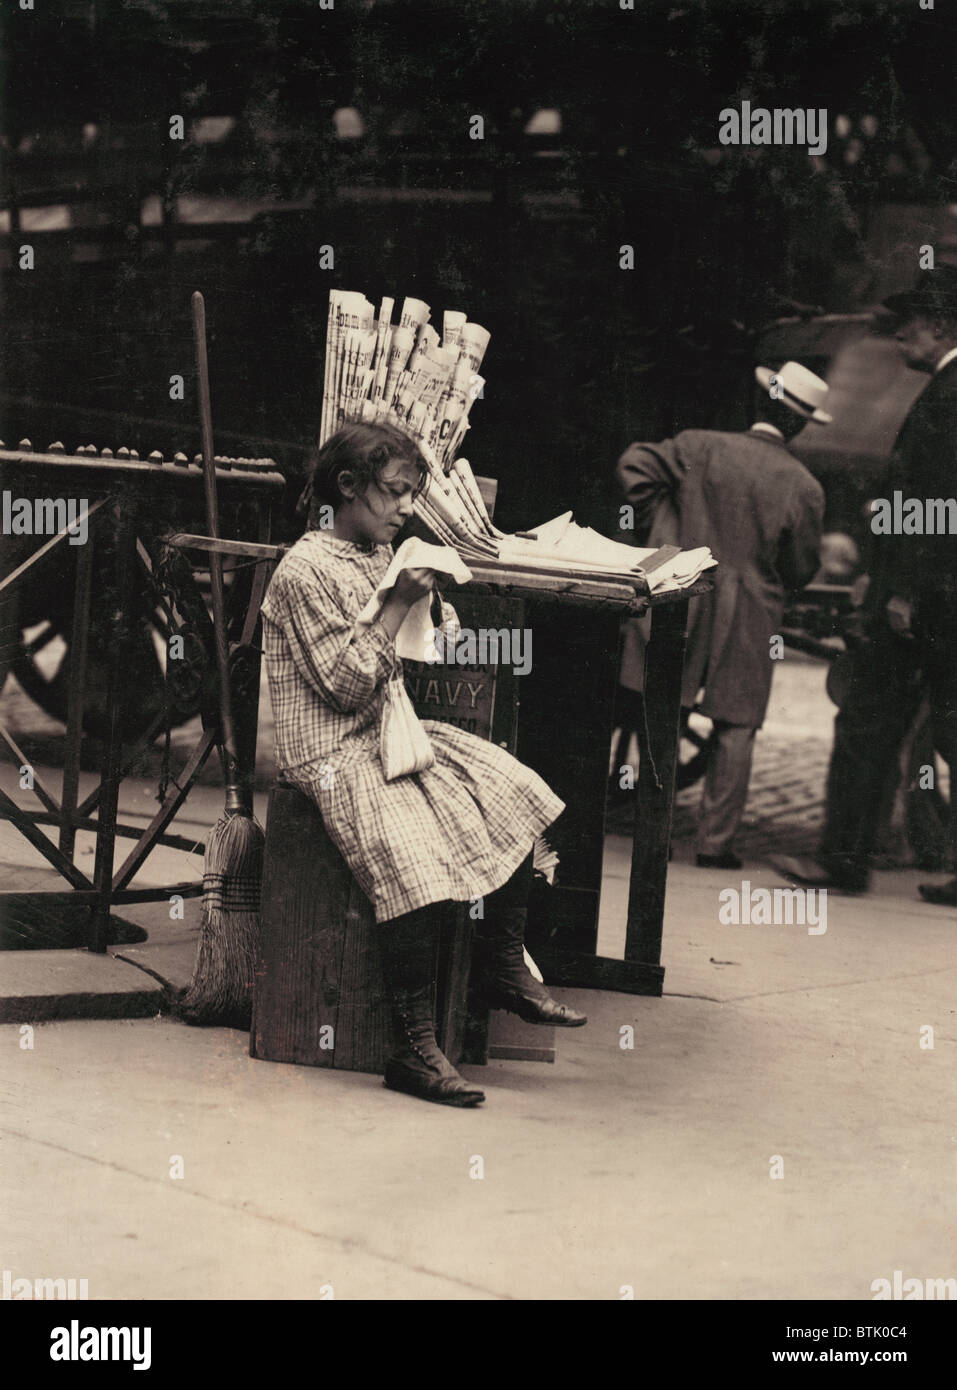 Kinderarbeit, Minnie Paster, 10 Jahre alt, tendenziell Zeitungskiosk im Bowery und Bond Street, New York, Foto von Lewis Wickes Hine, Juli 1910. Stockfoto